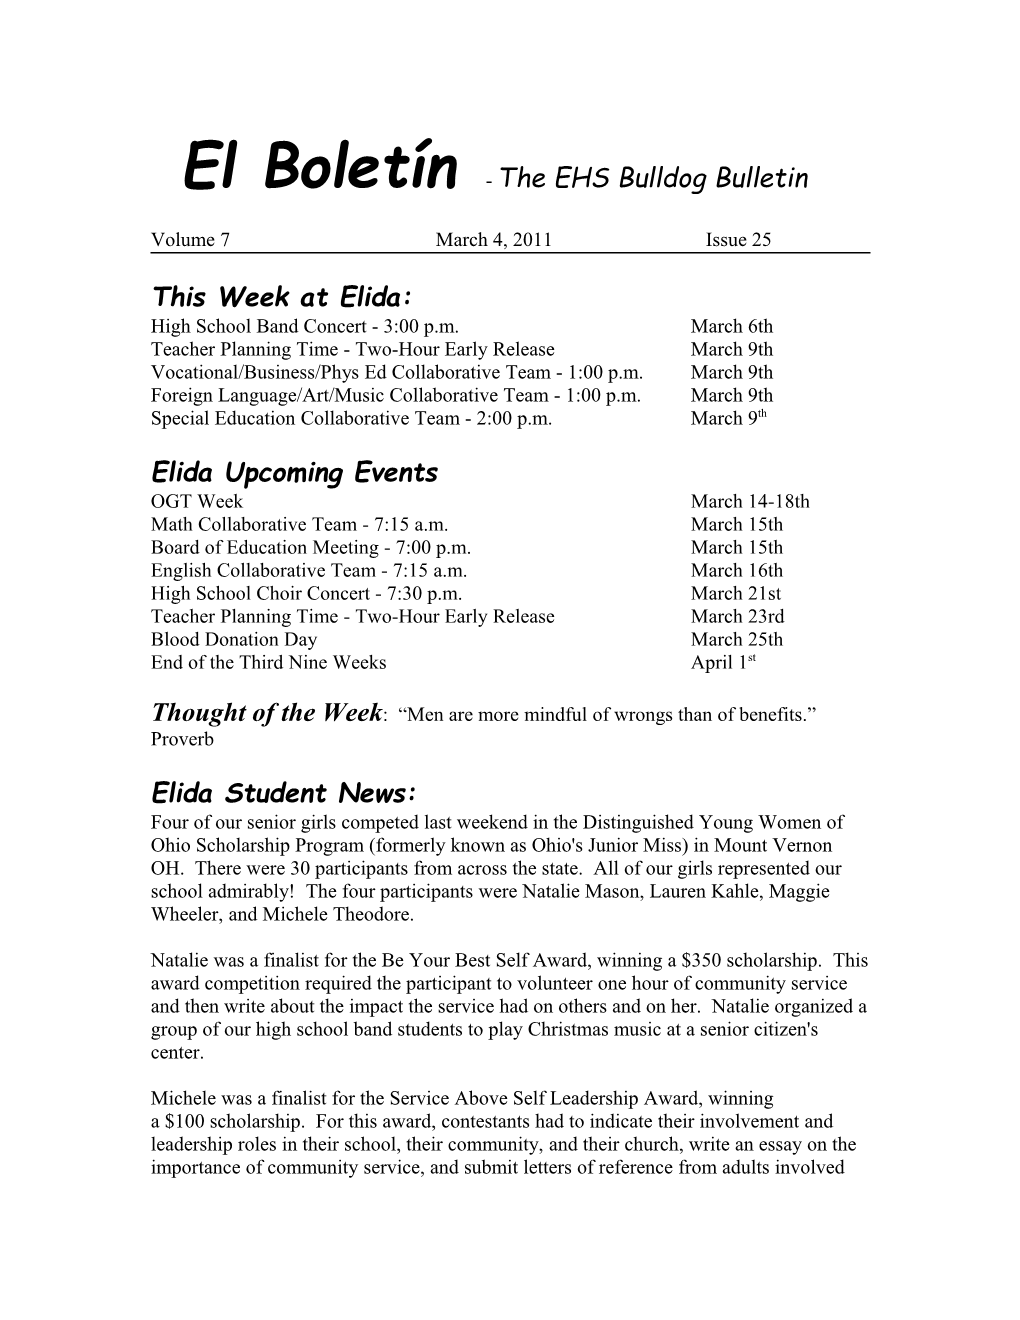 El Boletín - the EHS Bulldog Bulletin